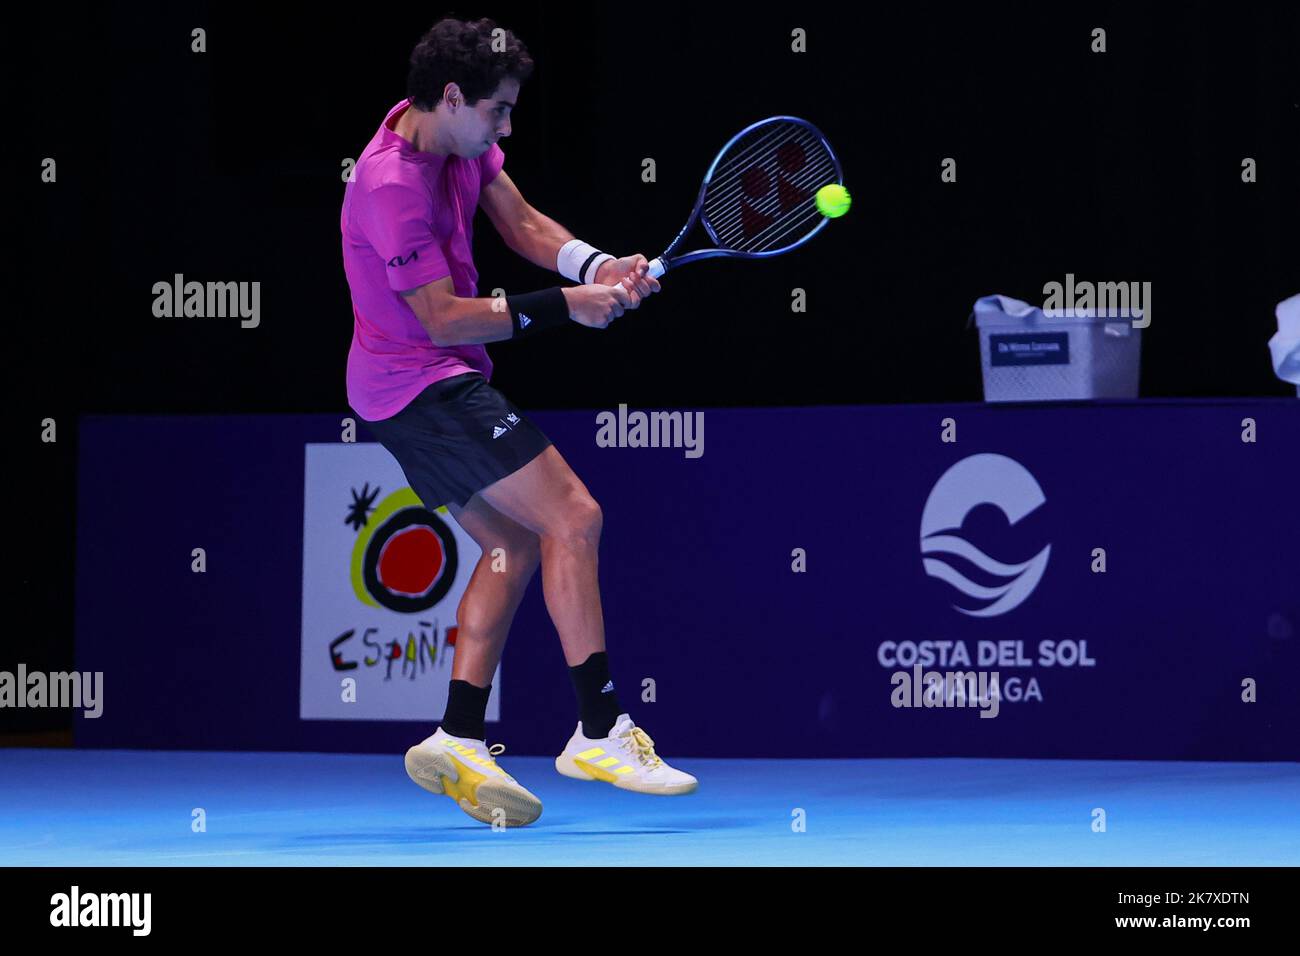 Anversa, Belgio. 19th Ott 2022. Jaume Munar spagnolo ha mostrato in azione  durante il gioco maschile di singolare 1/8 finali tra Munar spagnolo e  Nishioka giapponese al torneo europeo Open Tennis ATP,